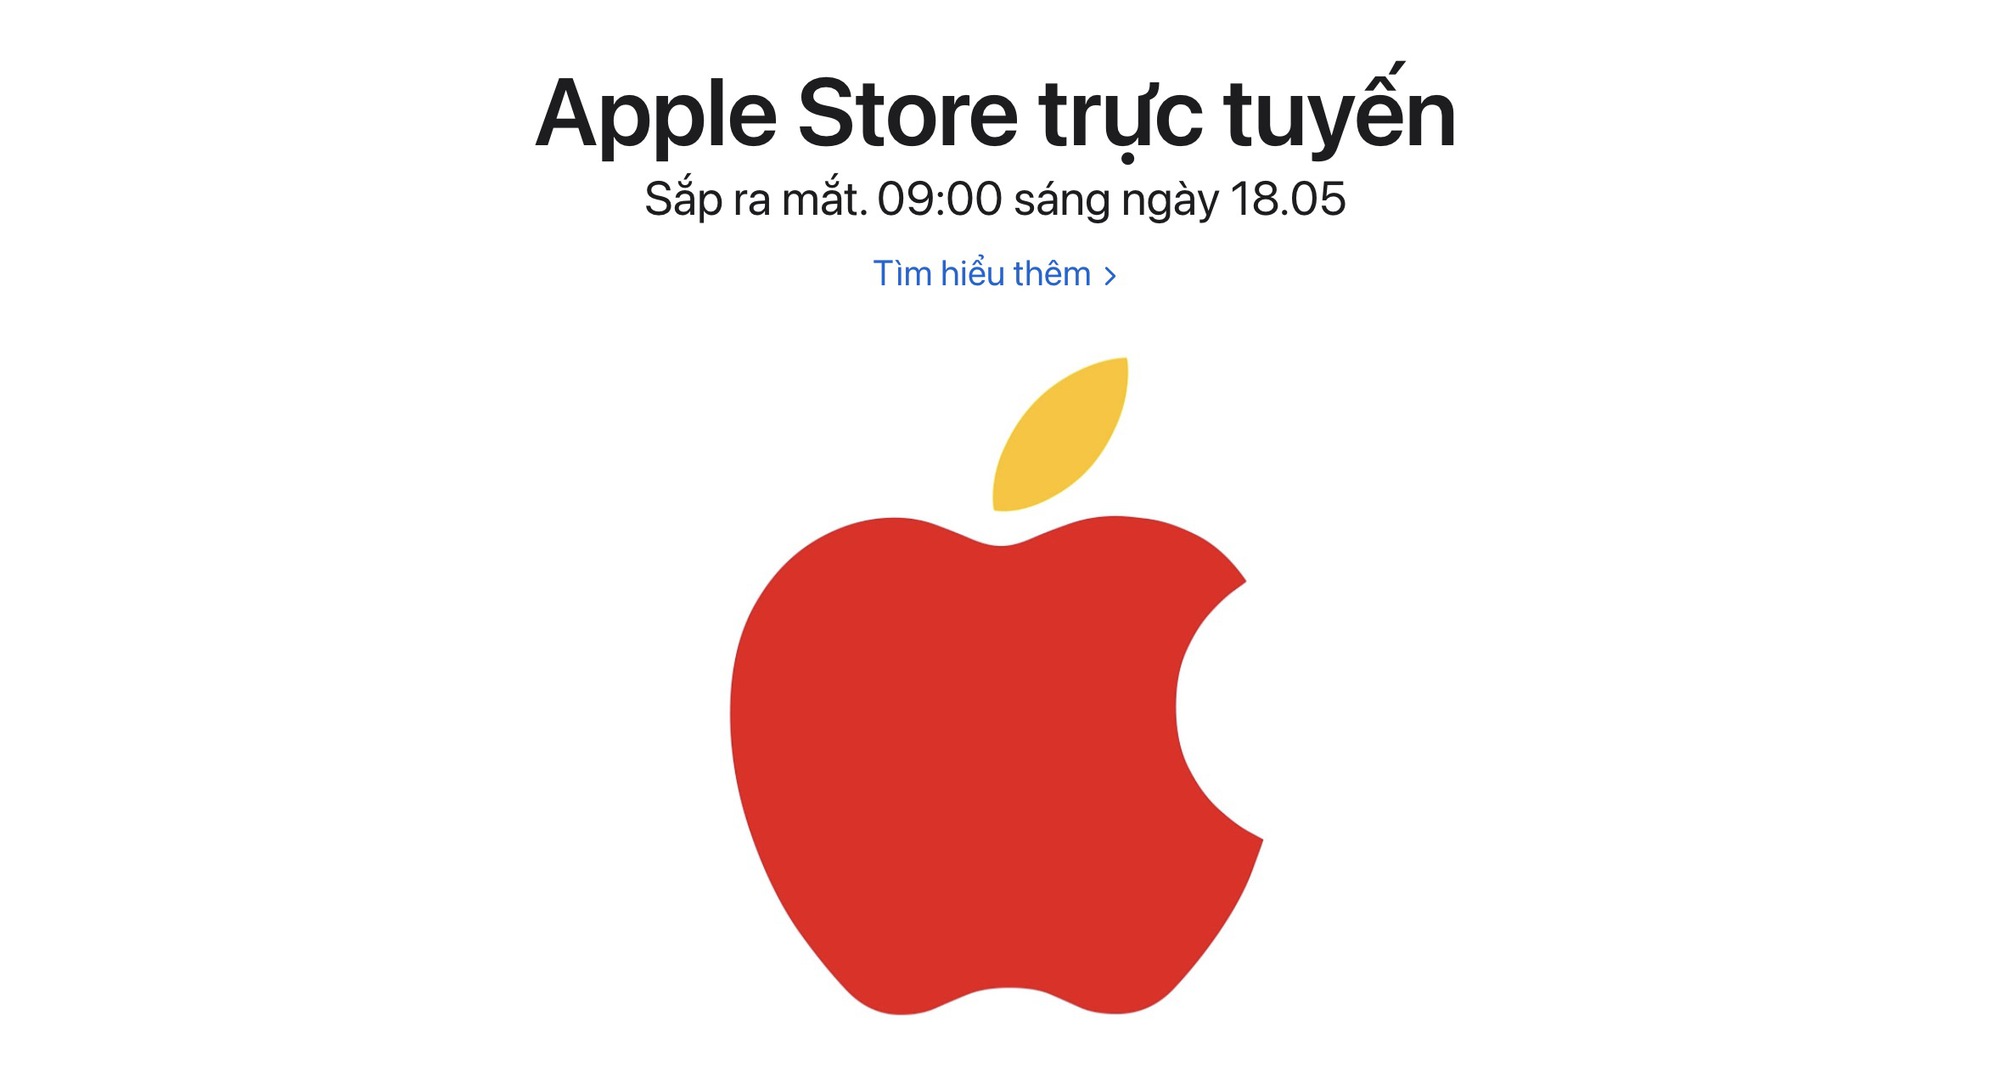 Giám đốc bán lẻ trực tuyến Apple: Chúng tôi luôn tìm kiếm cơ hội để mở Apple Store tại Việt Nam.